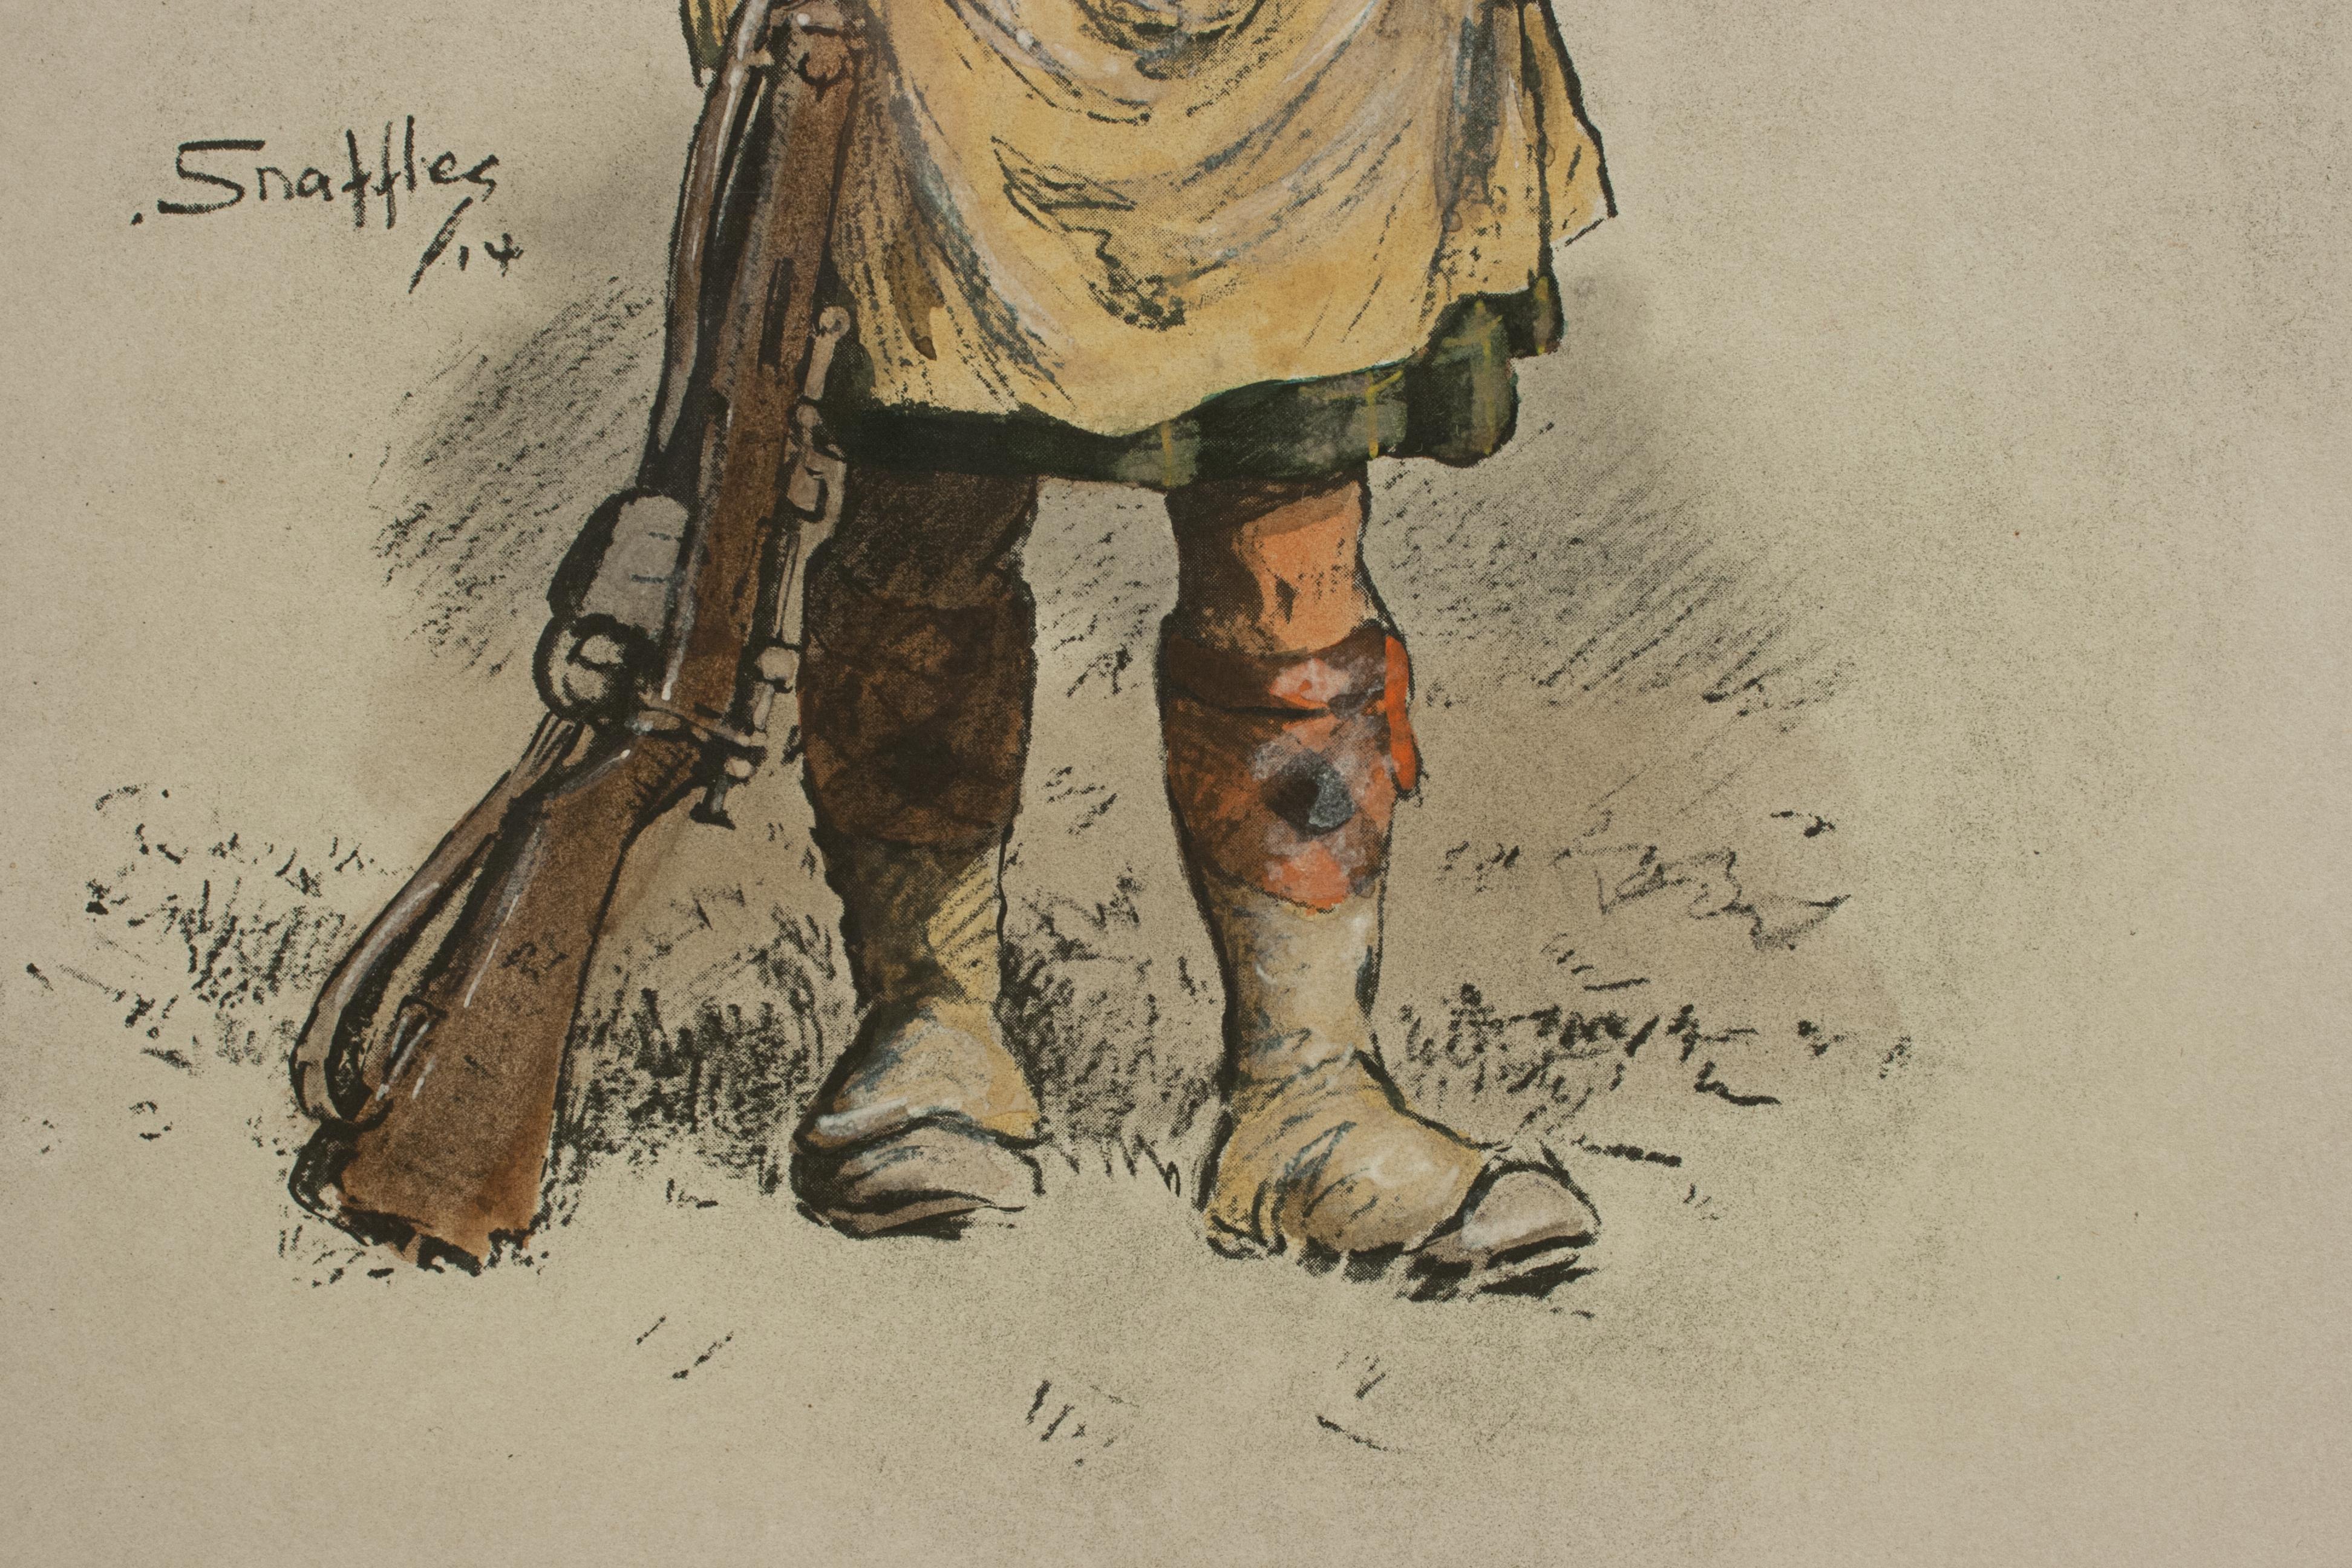 Snaffles WW I Military Print 'jock' 1